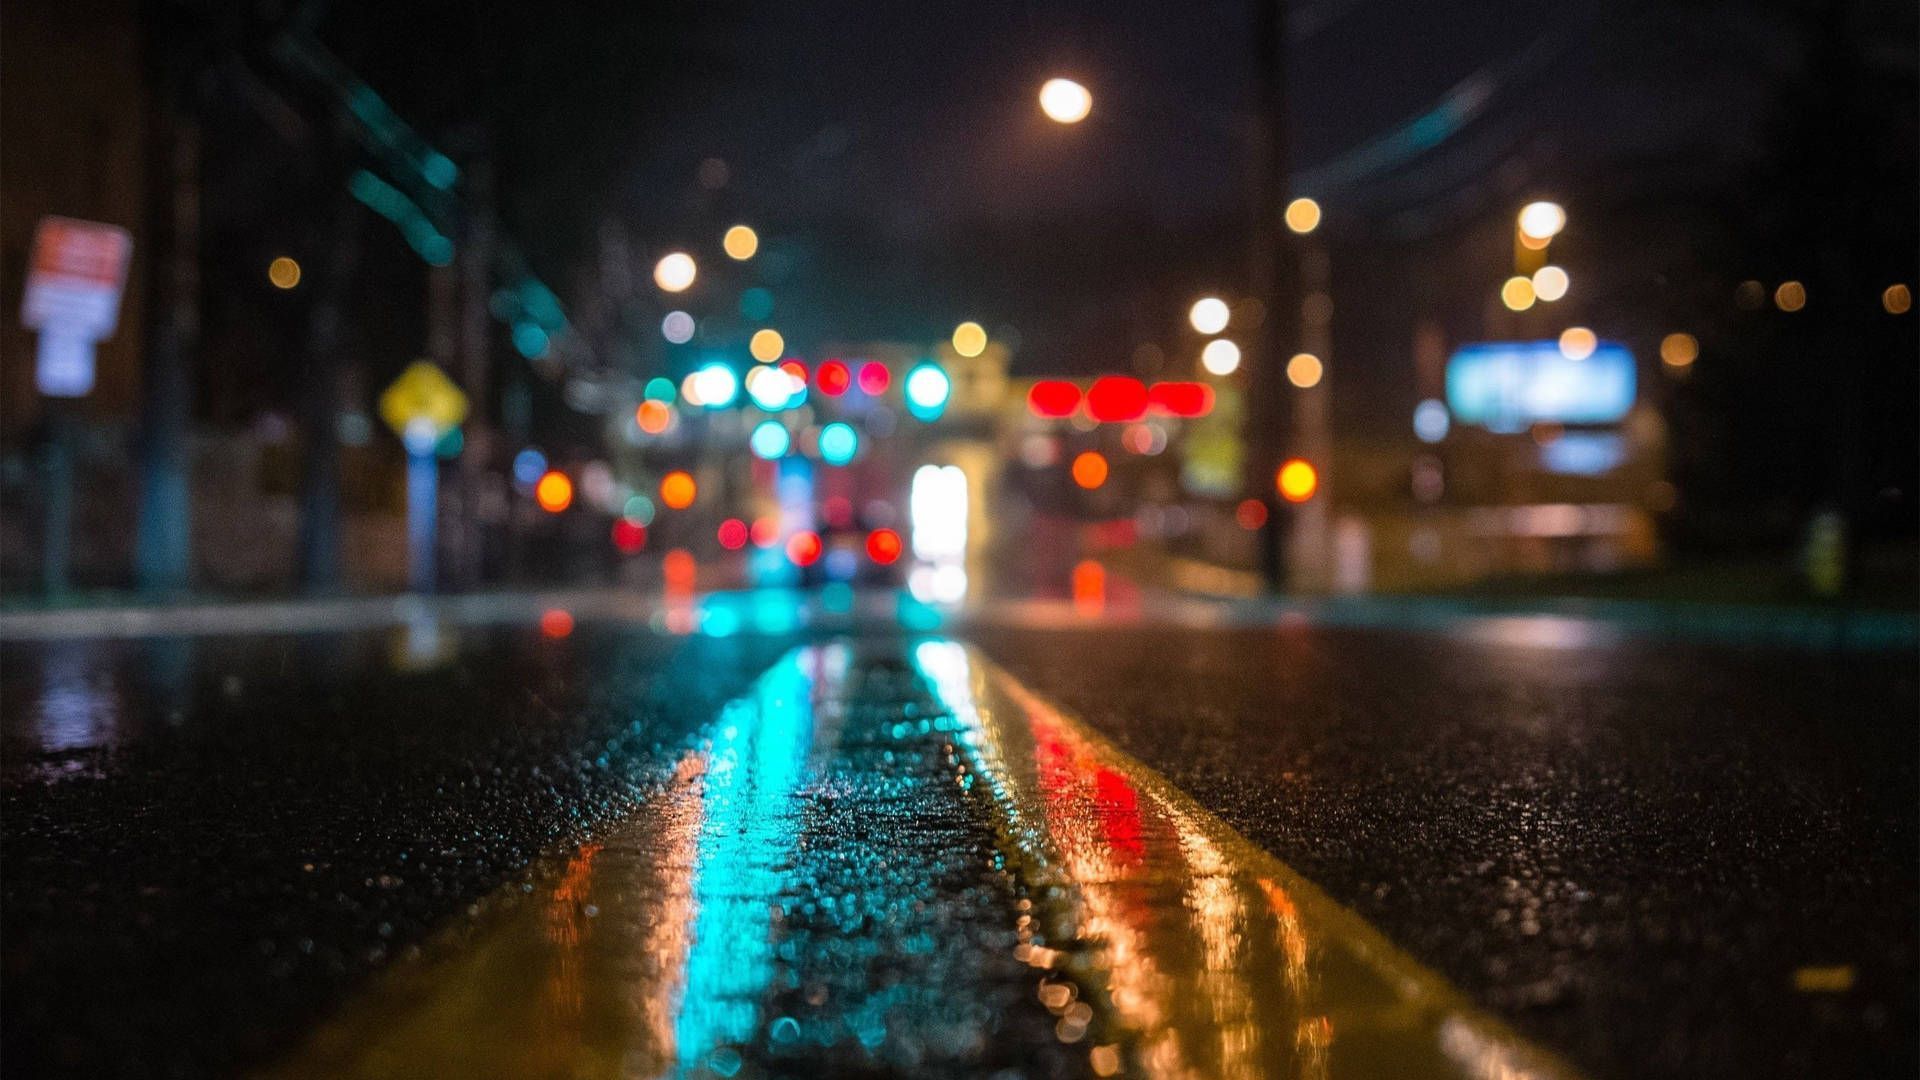  Regen Hintergrundbild 1920x1080. Downloaden Einverschwommener Nächtlicher Straßenblick Im Regen Wallpaper